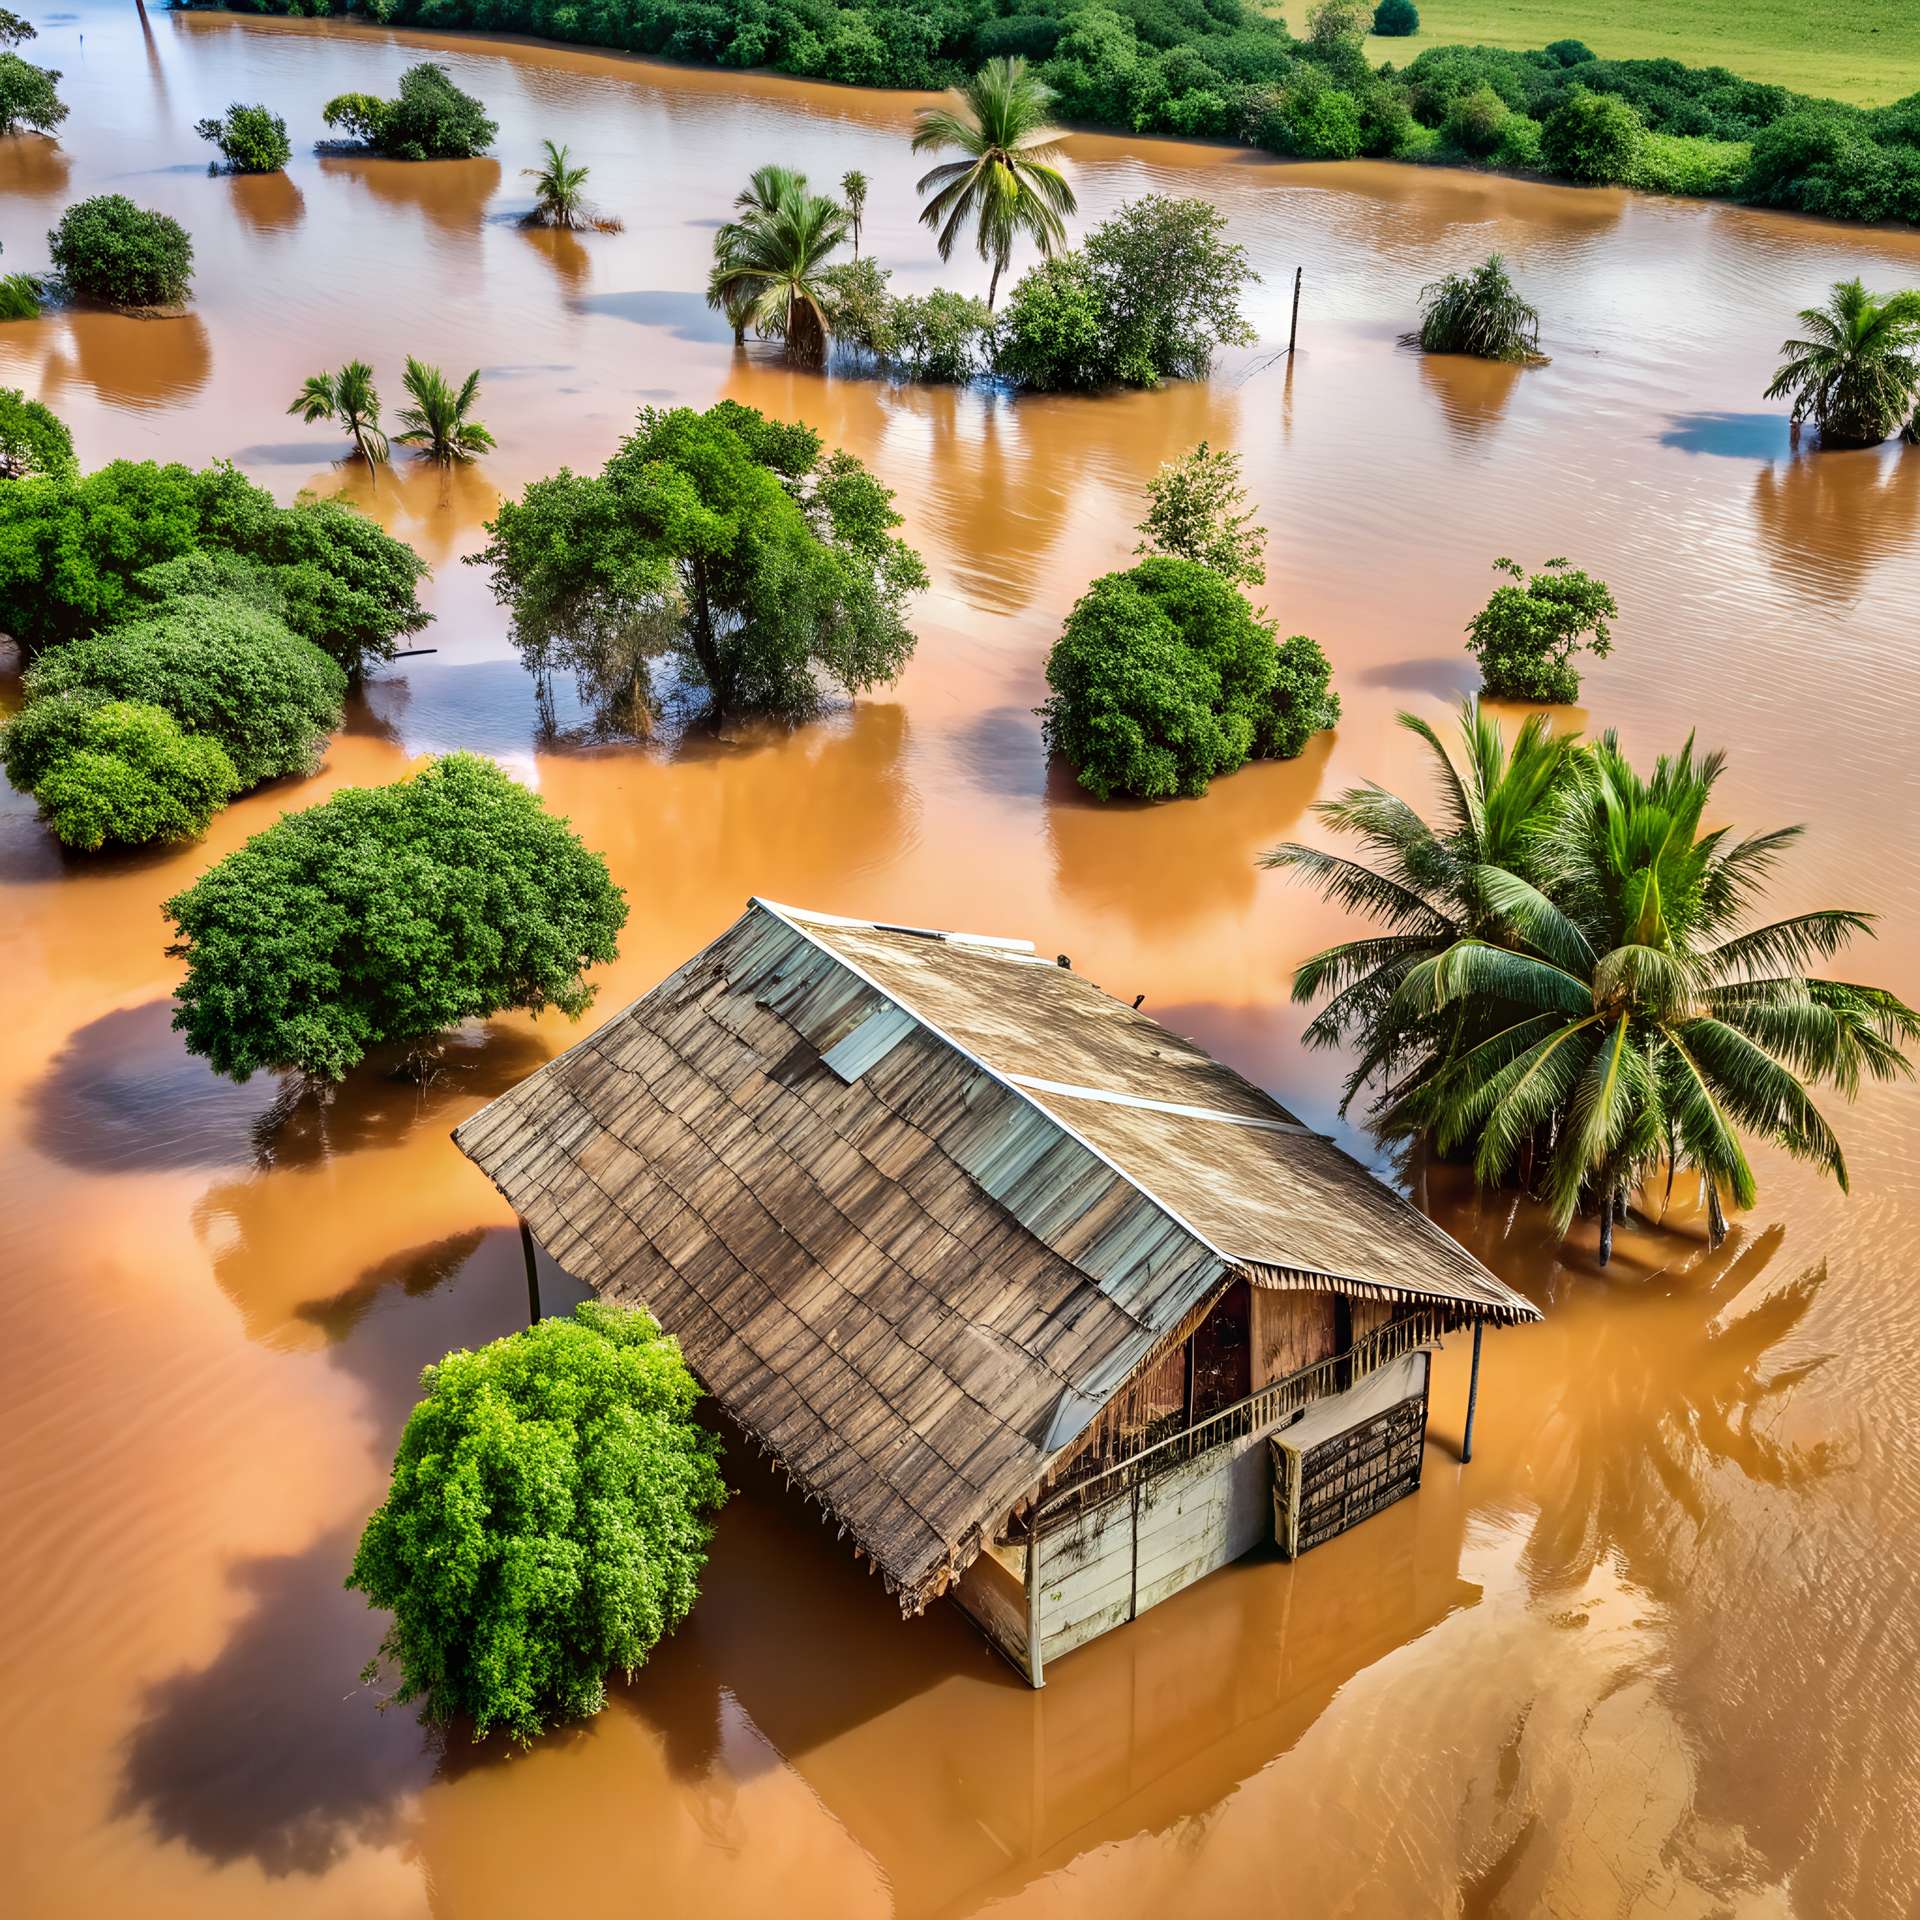 Enchentes dramáticas no Brasil: o que aconteceu?